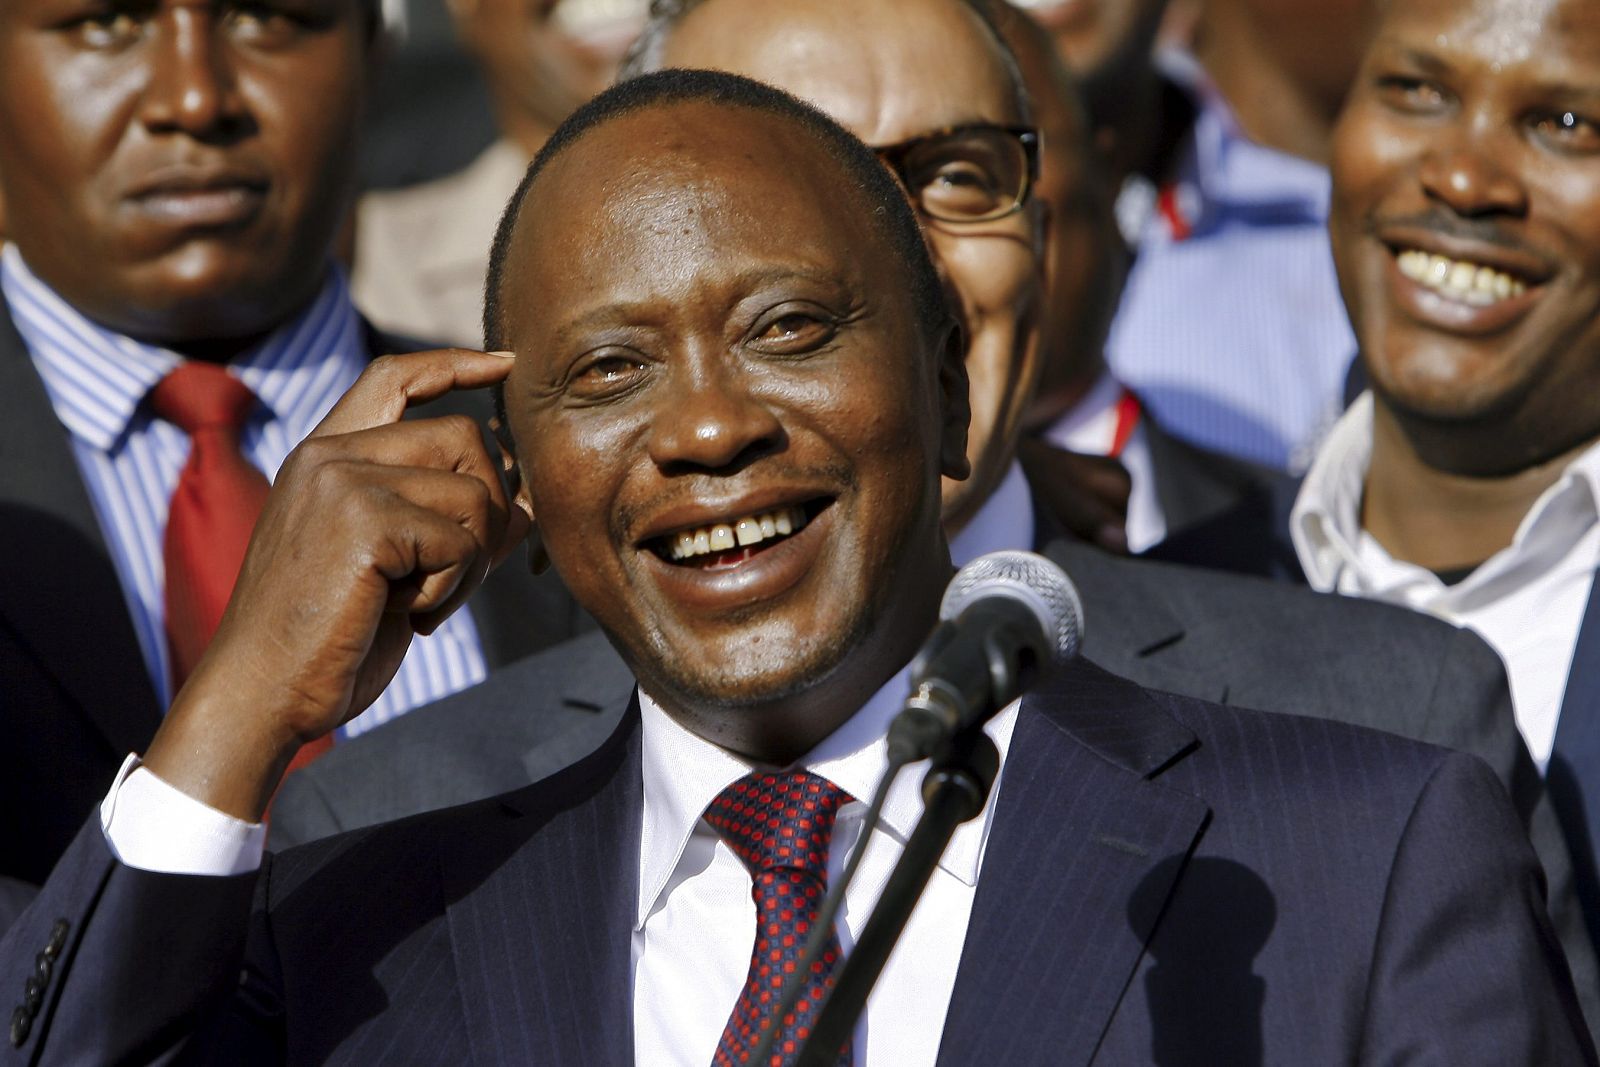 Foto de archivo del presidente de Kenia, Uhuru Kenyatta, tras ganar las elecciones presidenciales de 2013